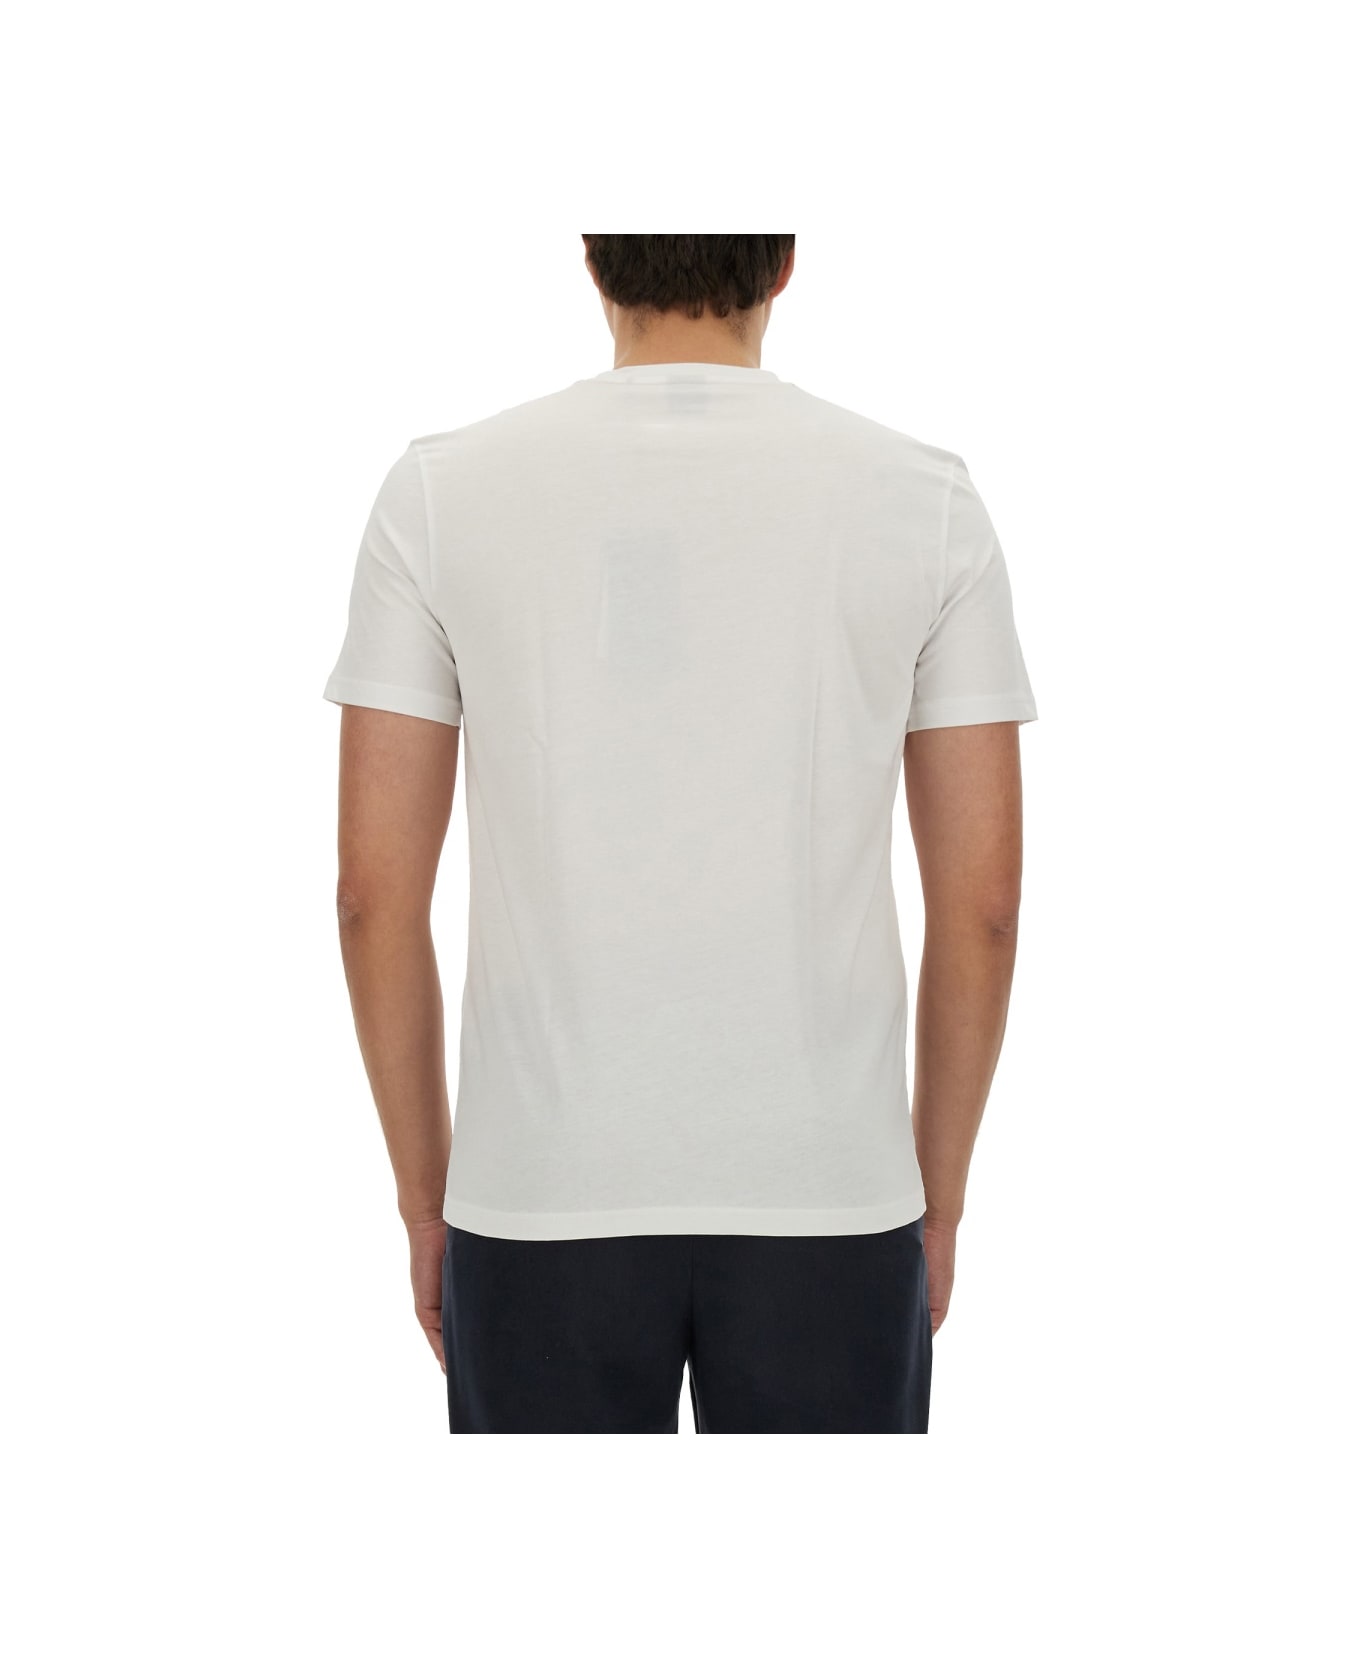 Hugo Boss Logo Print T-shirt - WHITE